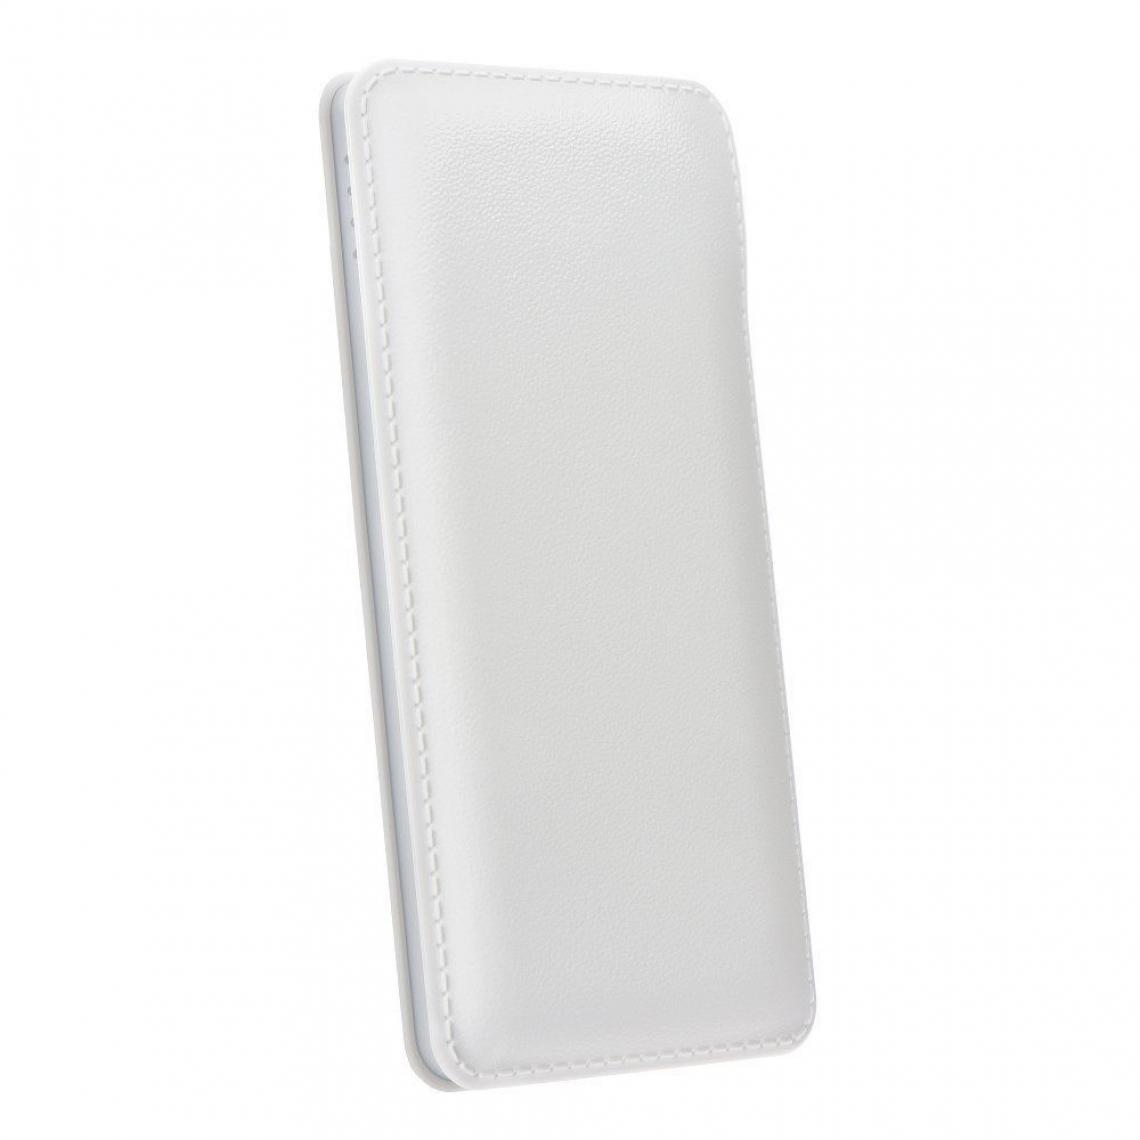 Ozzzo - Chargeur batterie externe 20000 mAh powerbank ozzzo blanc pour SAMSUNG G870 Galaxy S5 Active - Autres accessoires smartphone